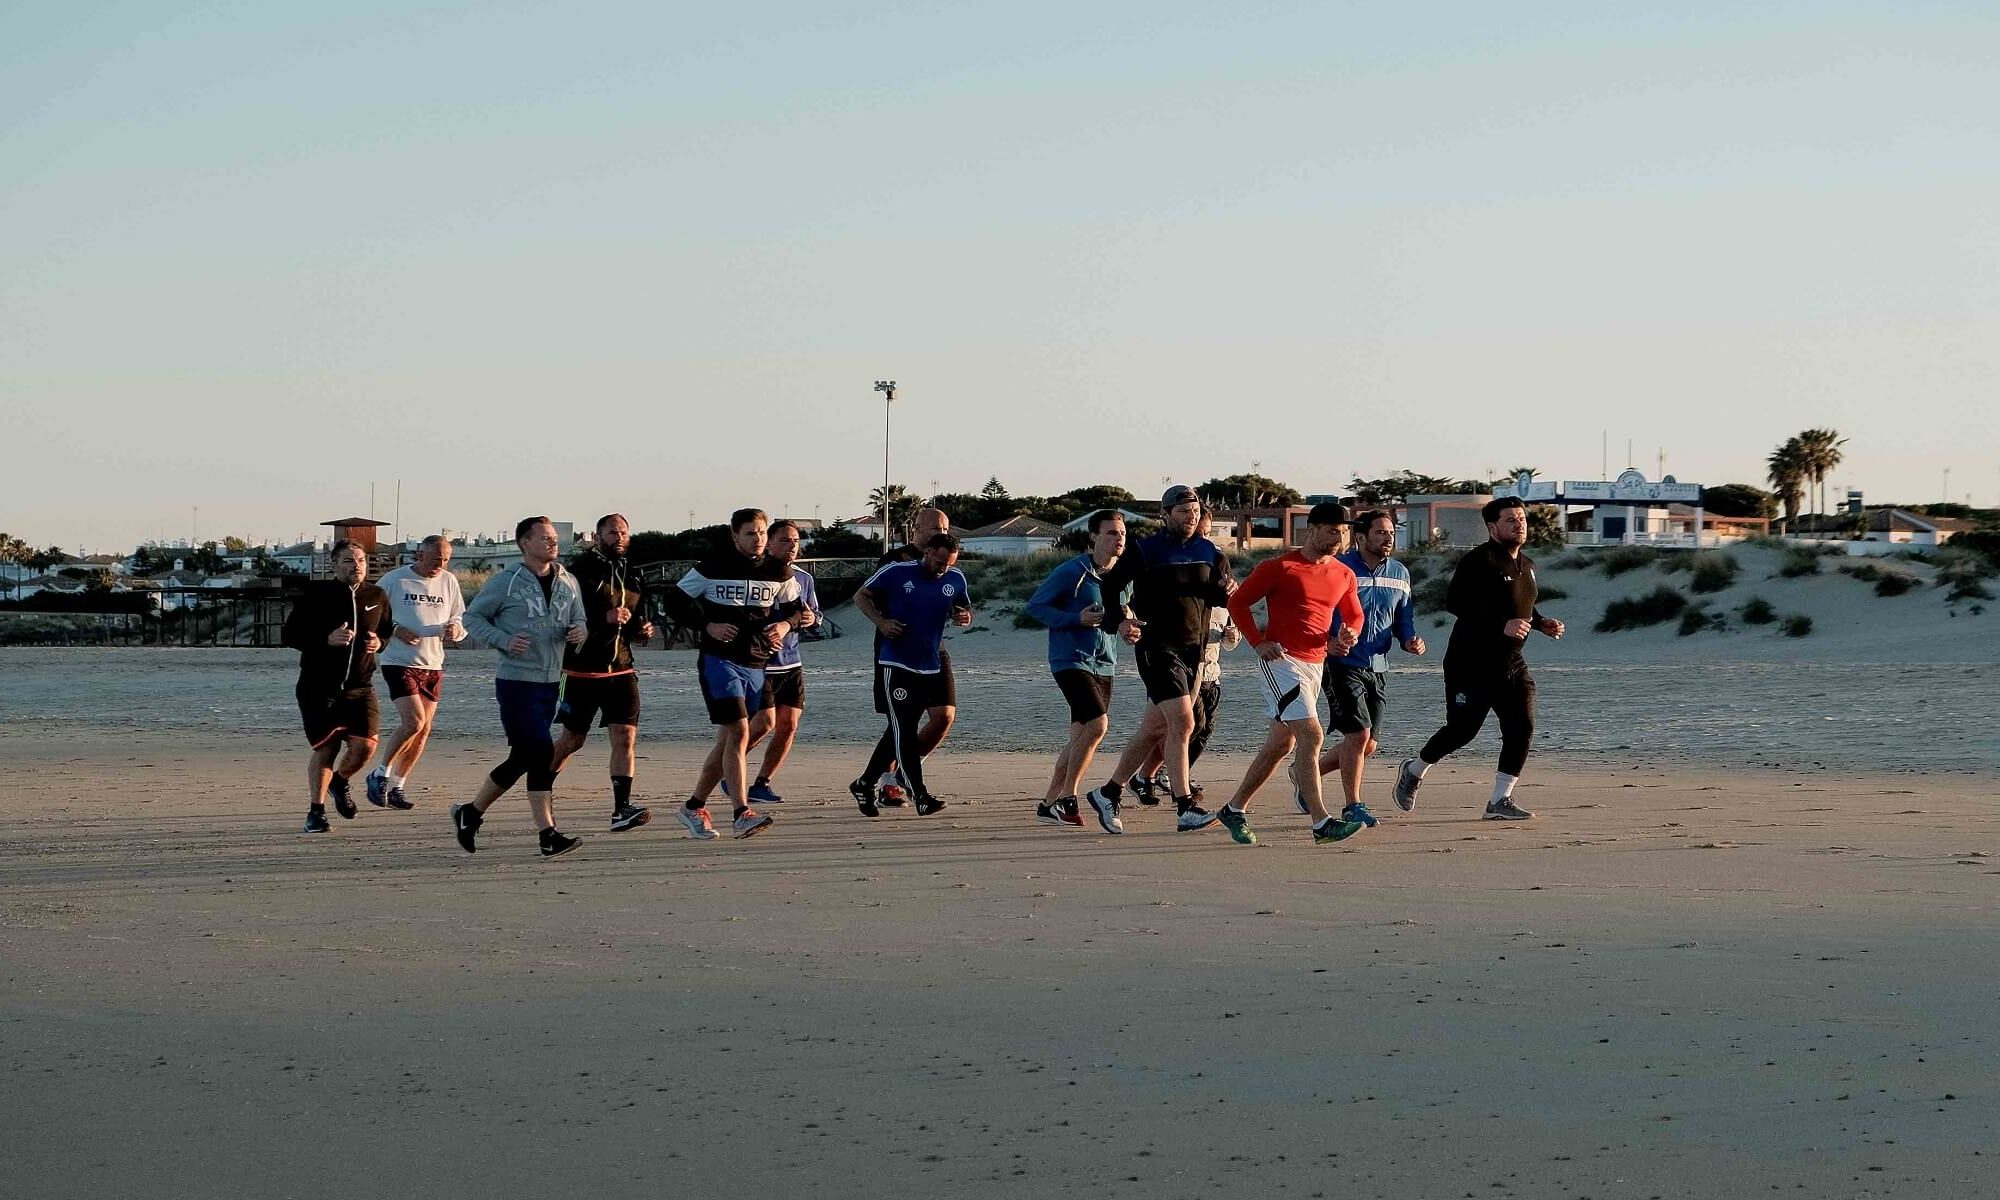 Laufen am Strand beim Men's Health Camp